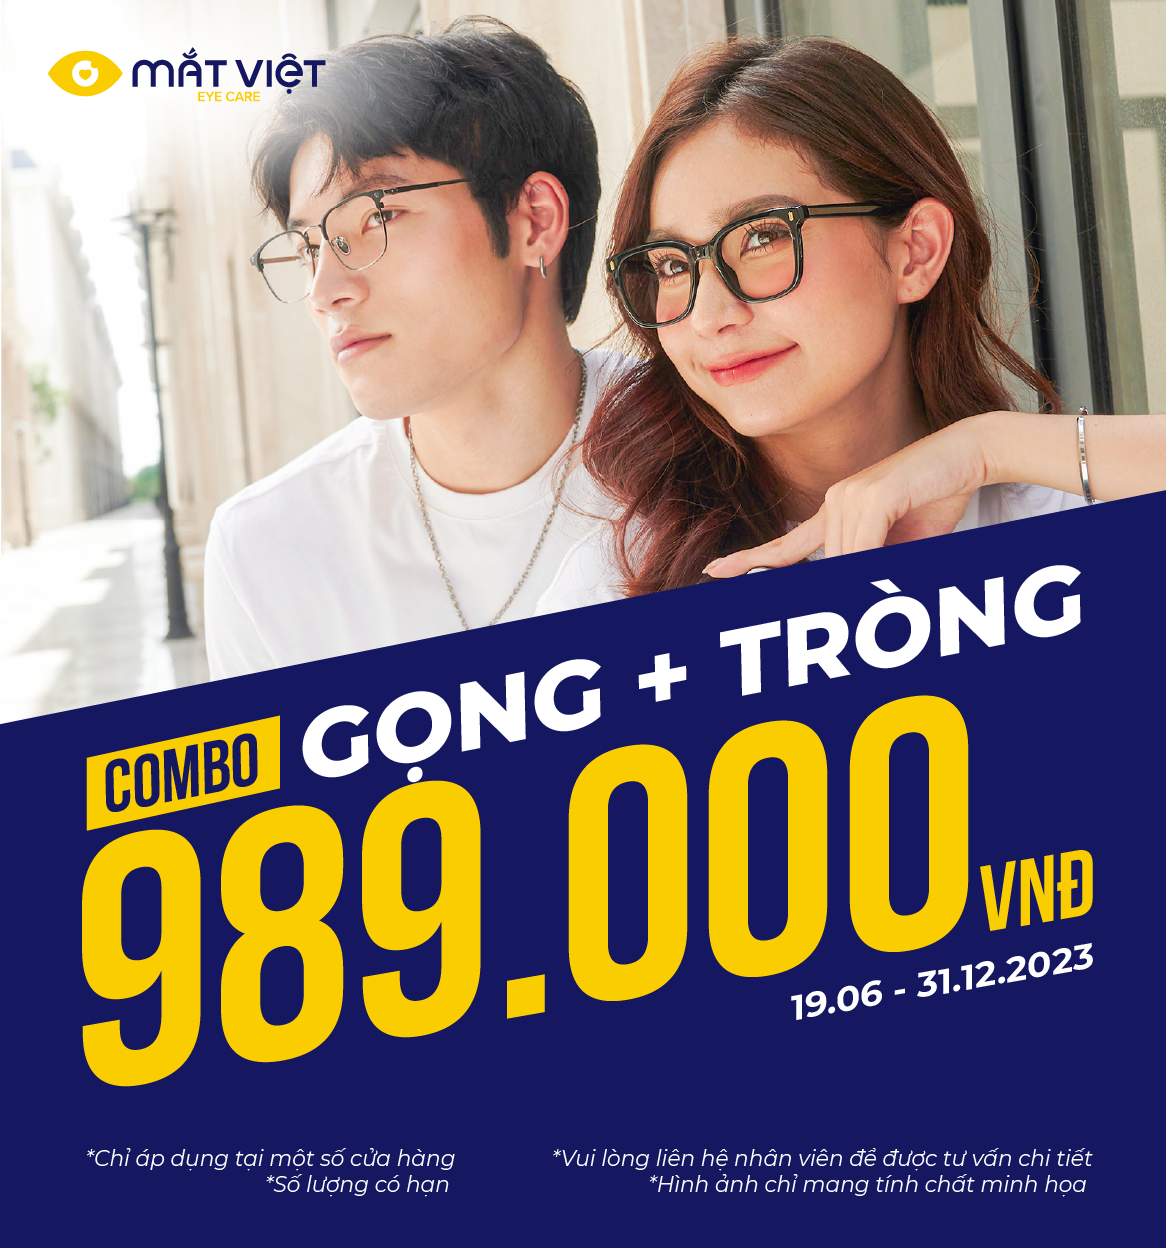 COMBO GỌNG VÀ TRÒNG CAO CẤP CHỈ 989,000 VND